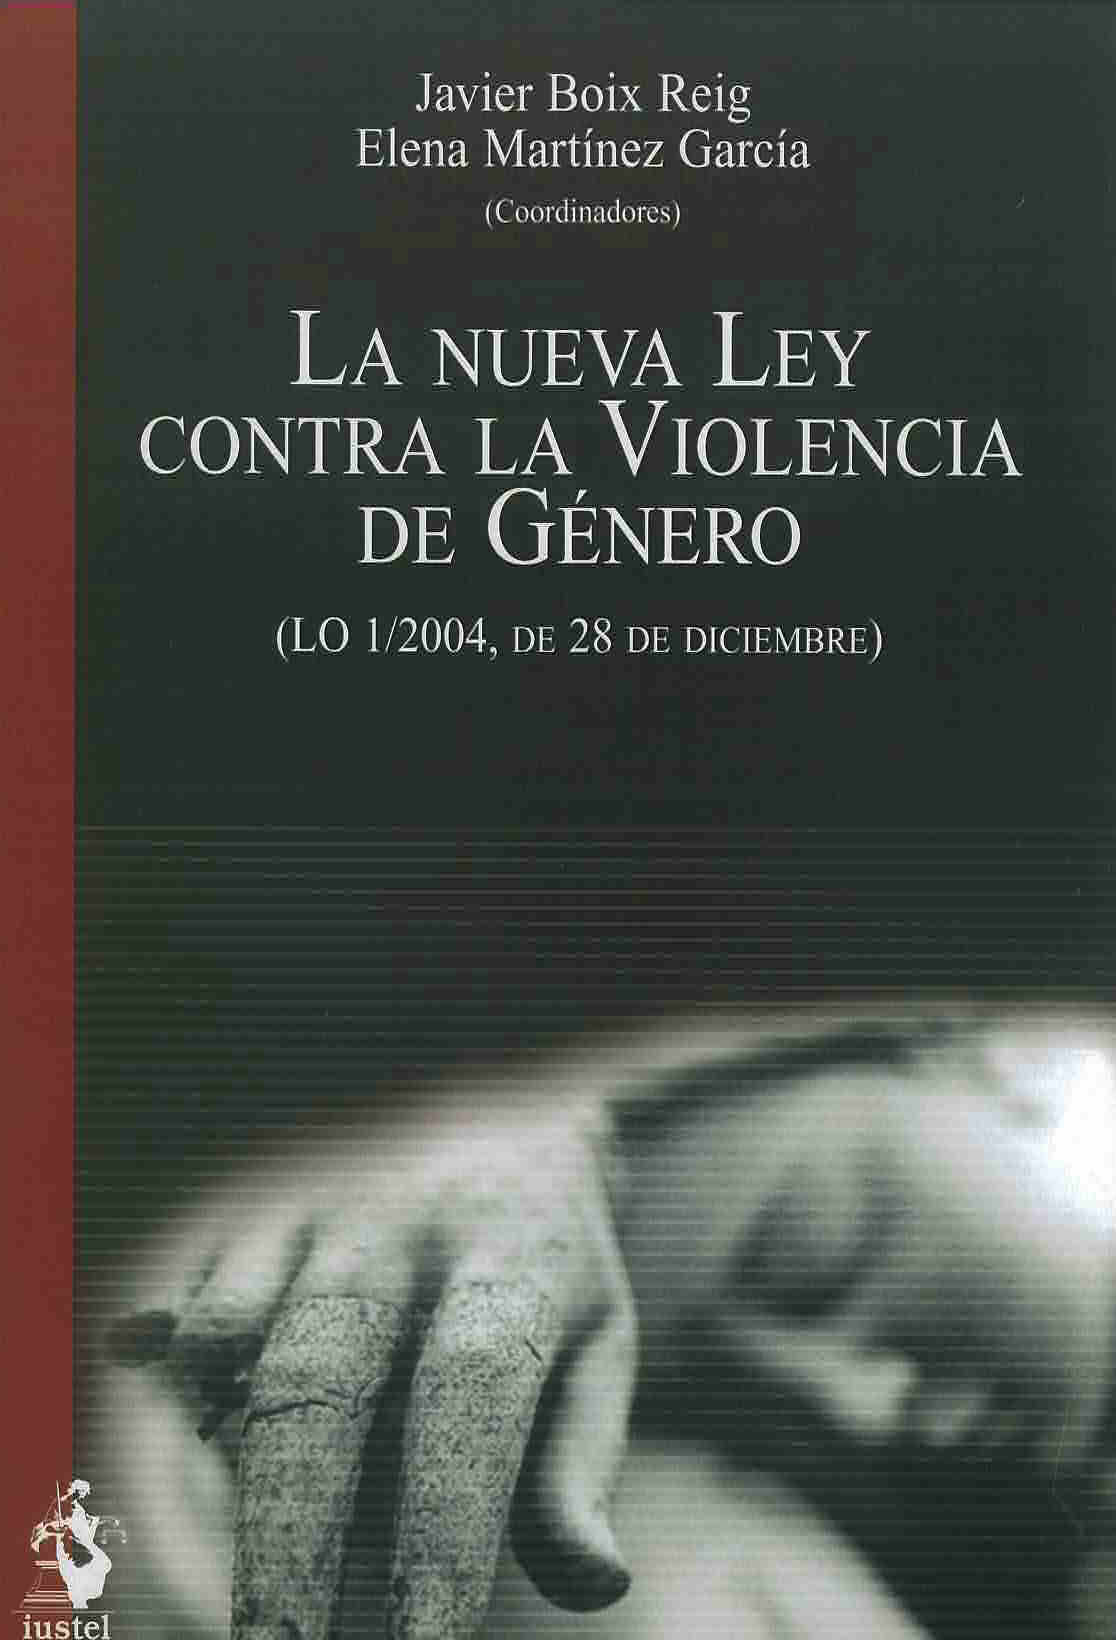 La nueva ley contra la violencia de género (LO 1/2004, de 28 de diciembre)